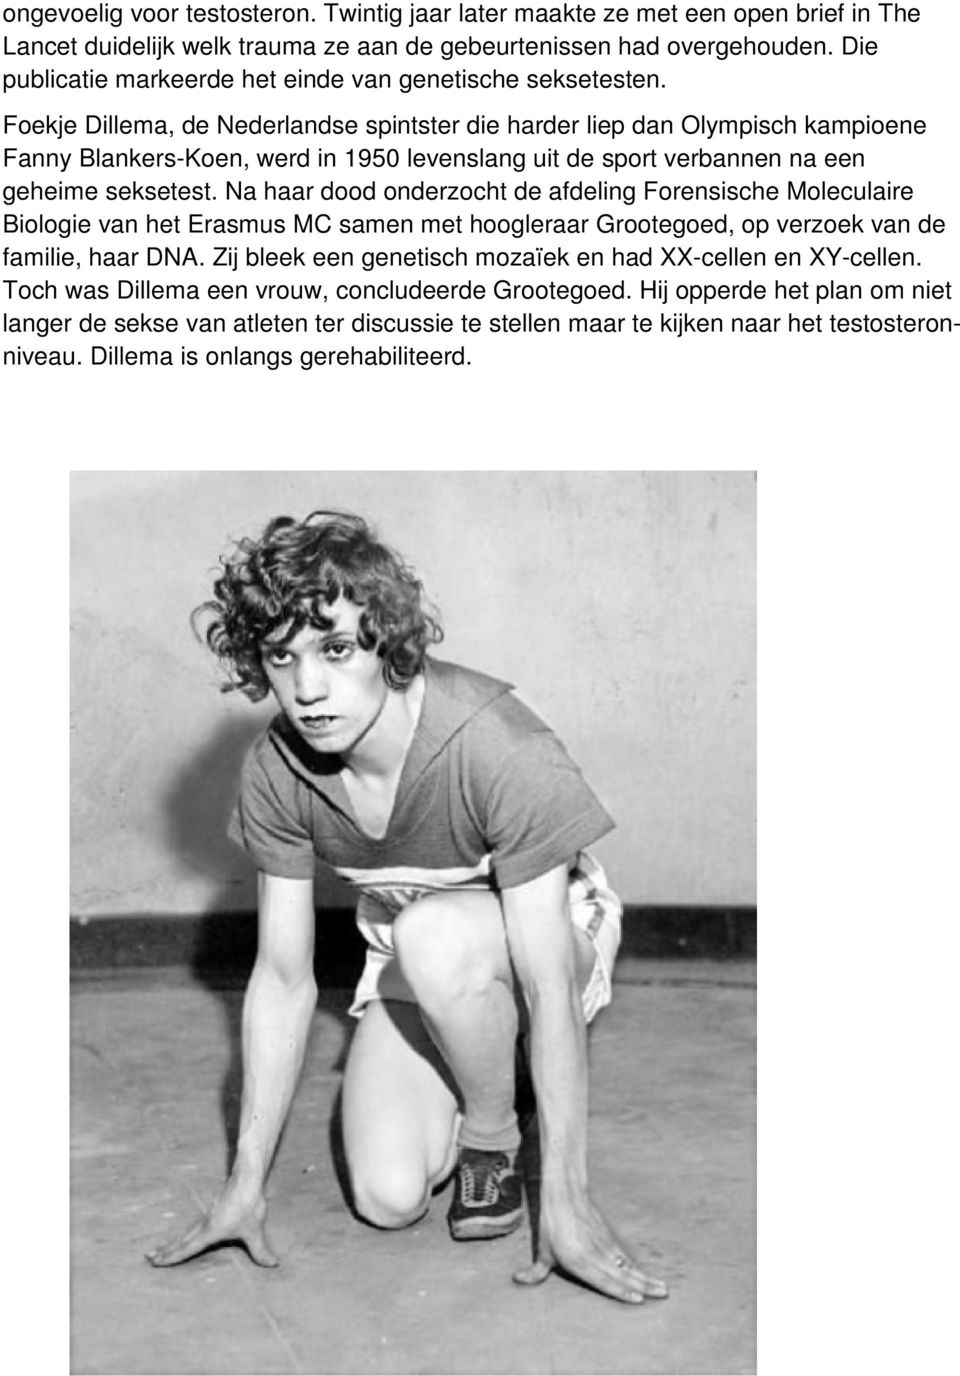 Foekje Dillema, de Nederlandse spintster die harder liep dan Olympisch kampioene Fanny Blankers-Koen, werd in 1950 levenslang uit de sport verbannen na een geheime seksetest.